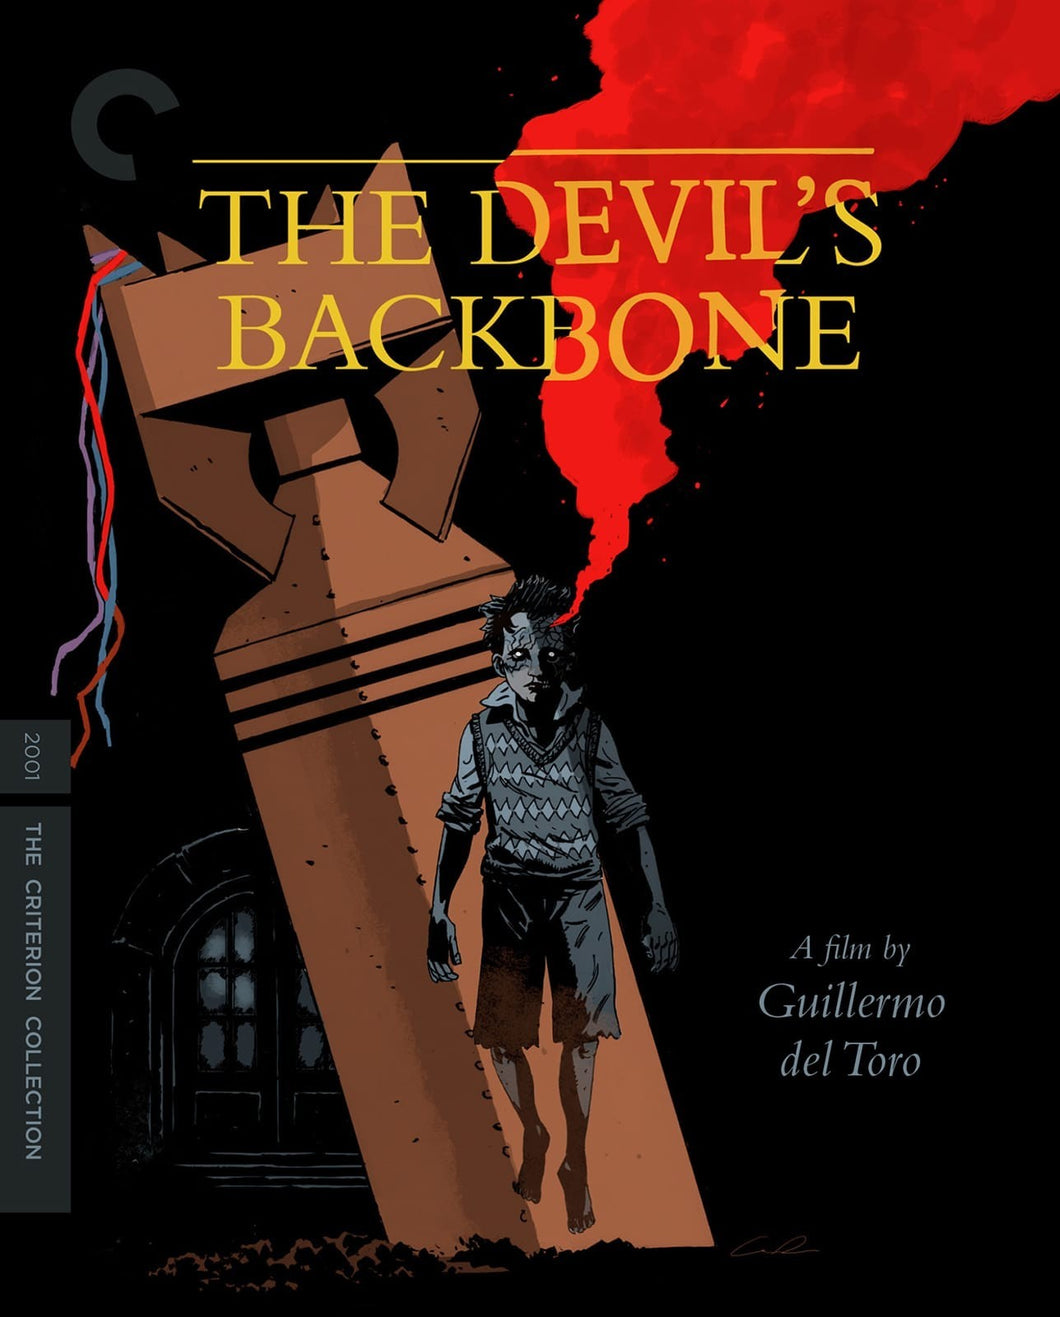 The Devil's Backbone (2001) de Guillermo del Toro - front cover